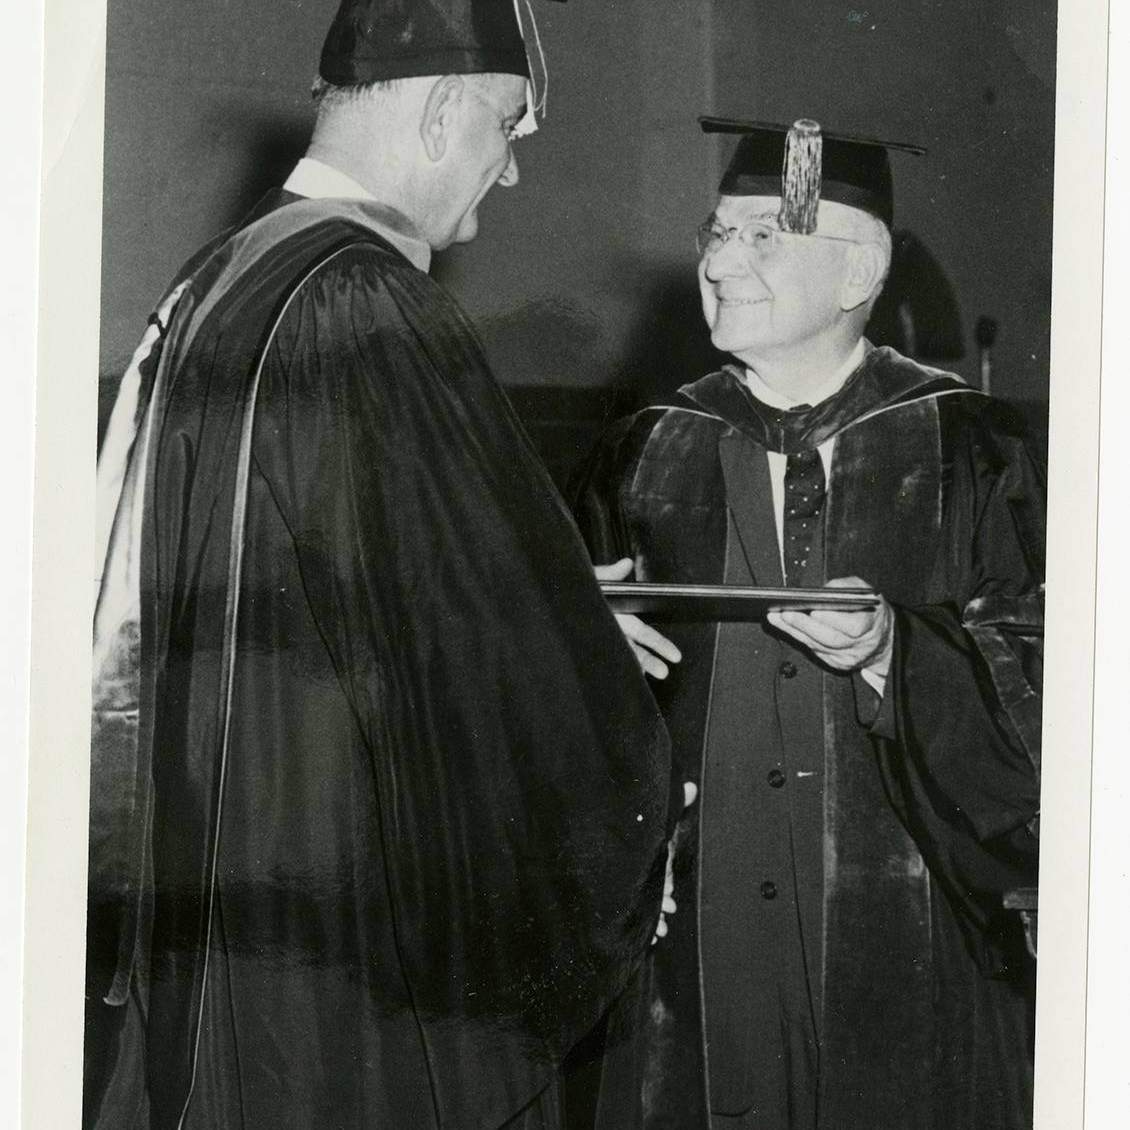 lbj receiving honorary doctorate